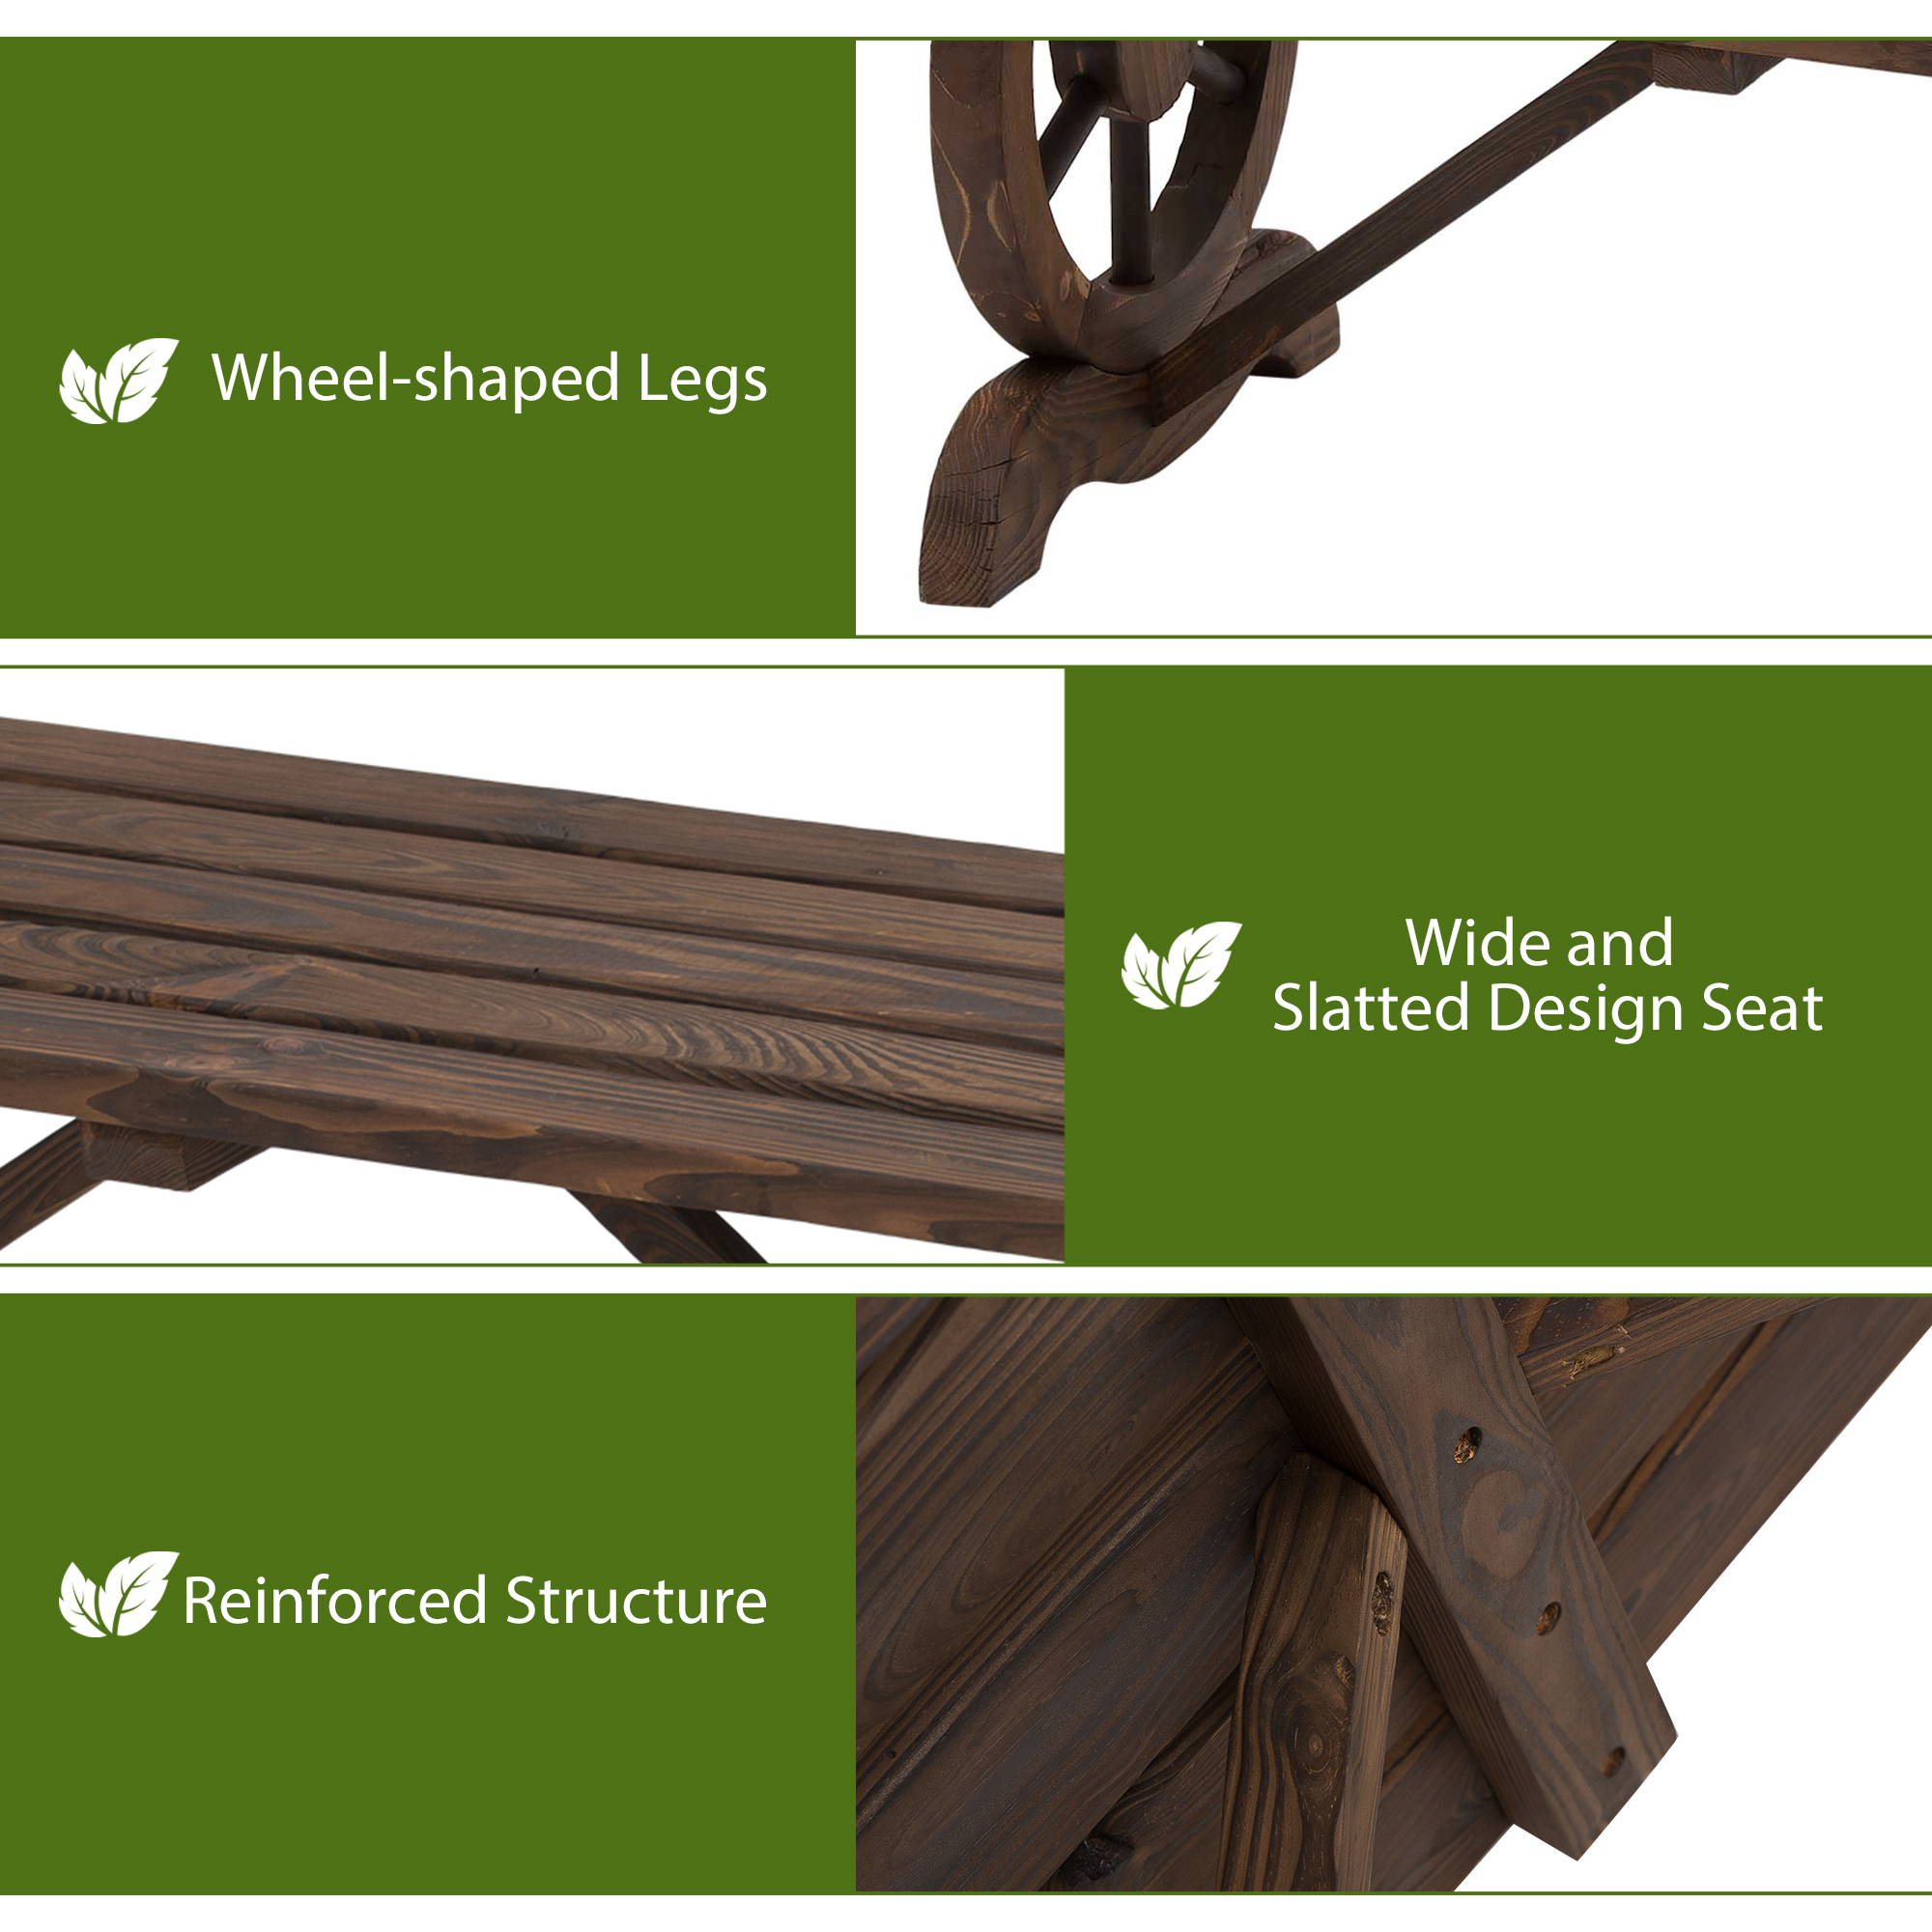 Outsunny 2-Person Wood Outdoor Garden Bench w/ Wagon Wheel Leg Design - image 3 of 9